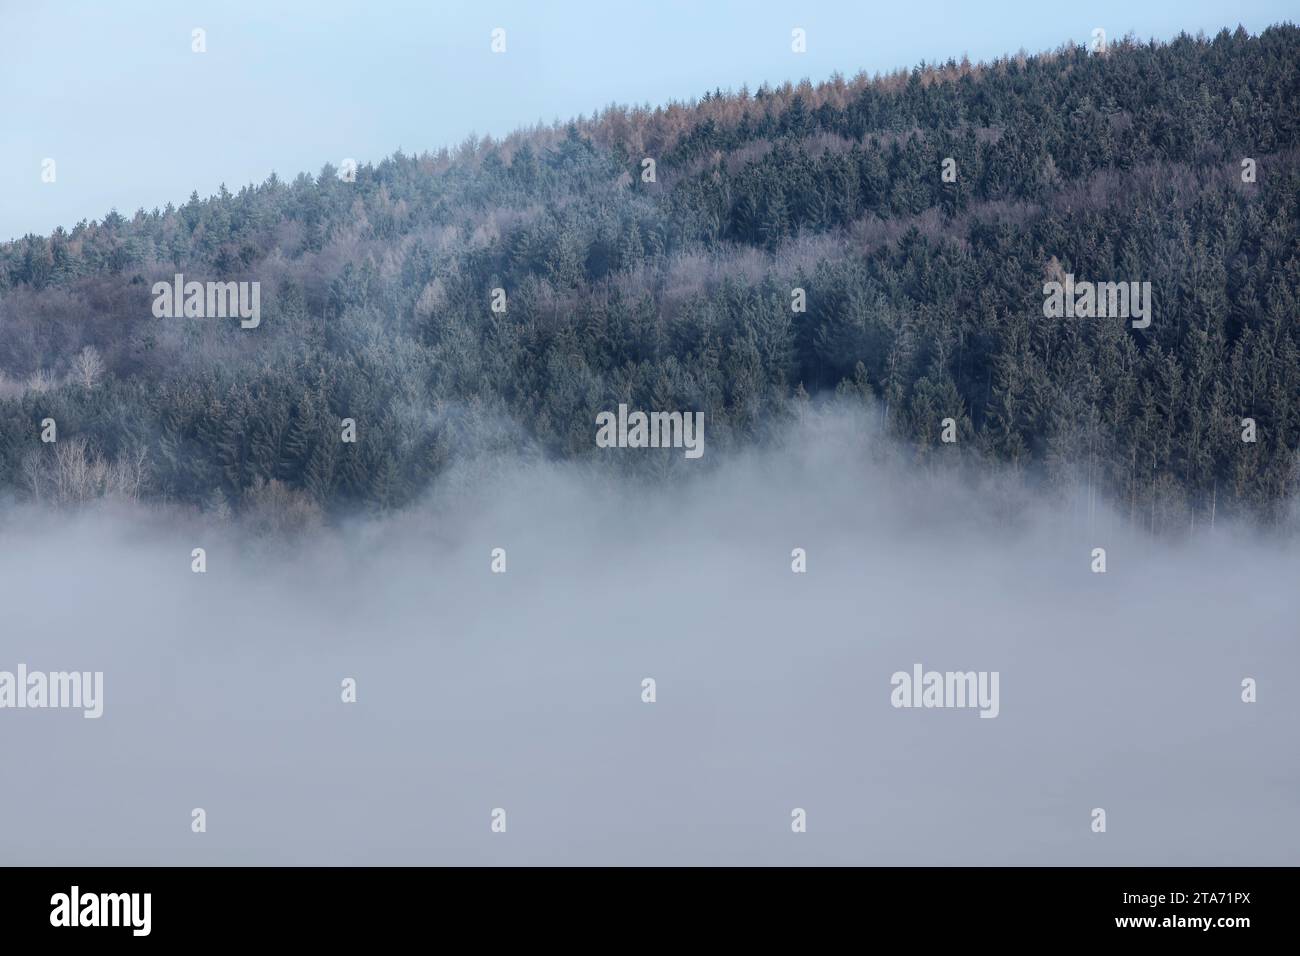 Foggy landscape, near Wesertal, Weser Uplands, Weserbergland, Hesse, Germany Stock Photo